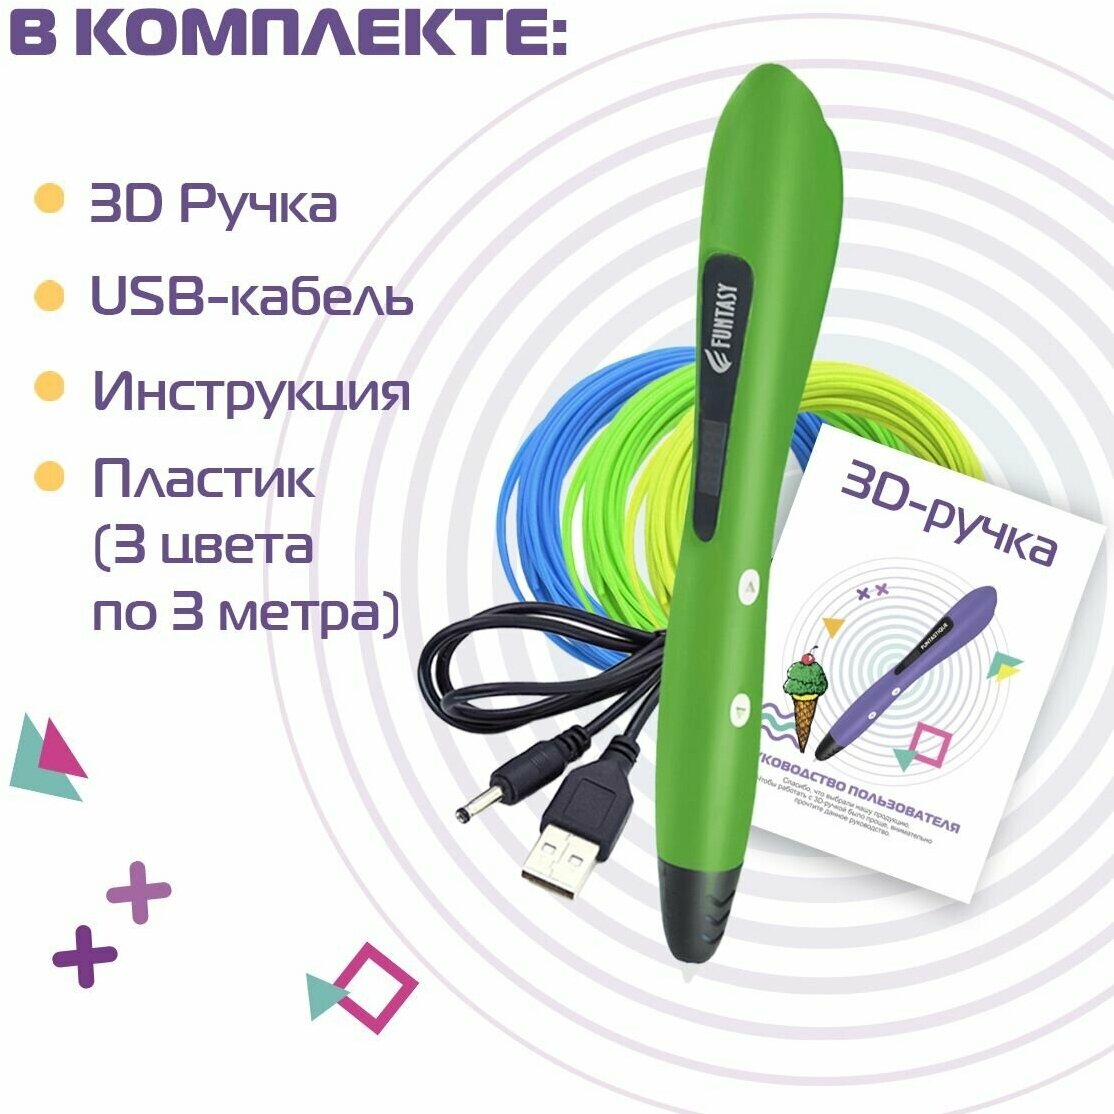 3D ручка для творчества Funtasy PIRATE с набором пластика 3д ручка для мальчиков и девочек (зеленая)  триде  подарок для ребенка